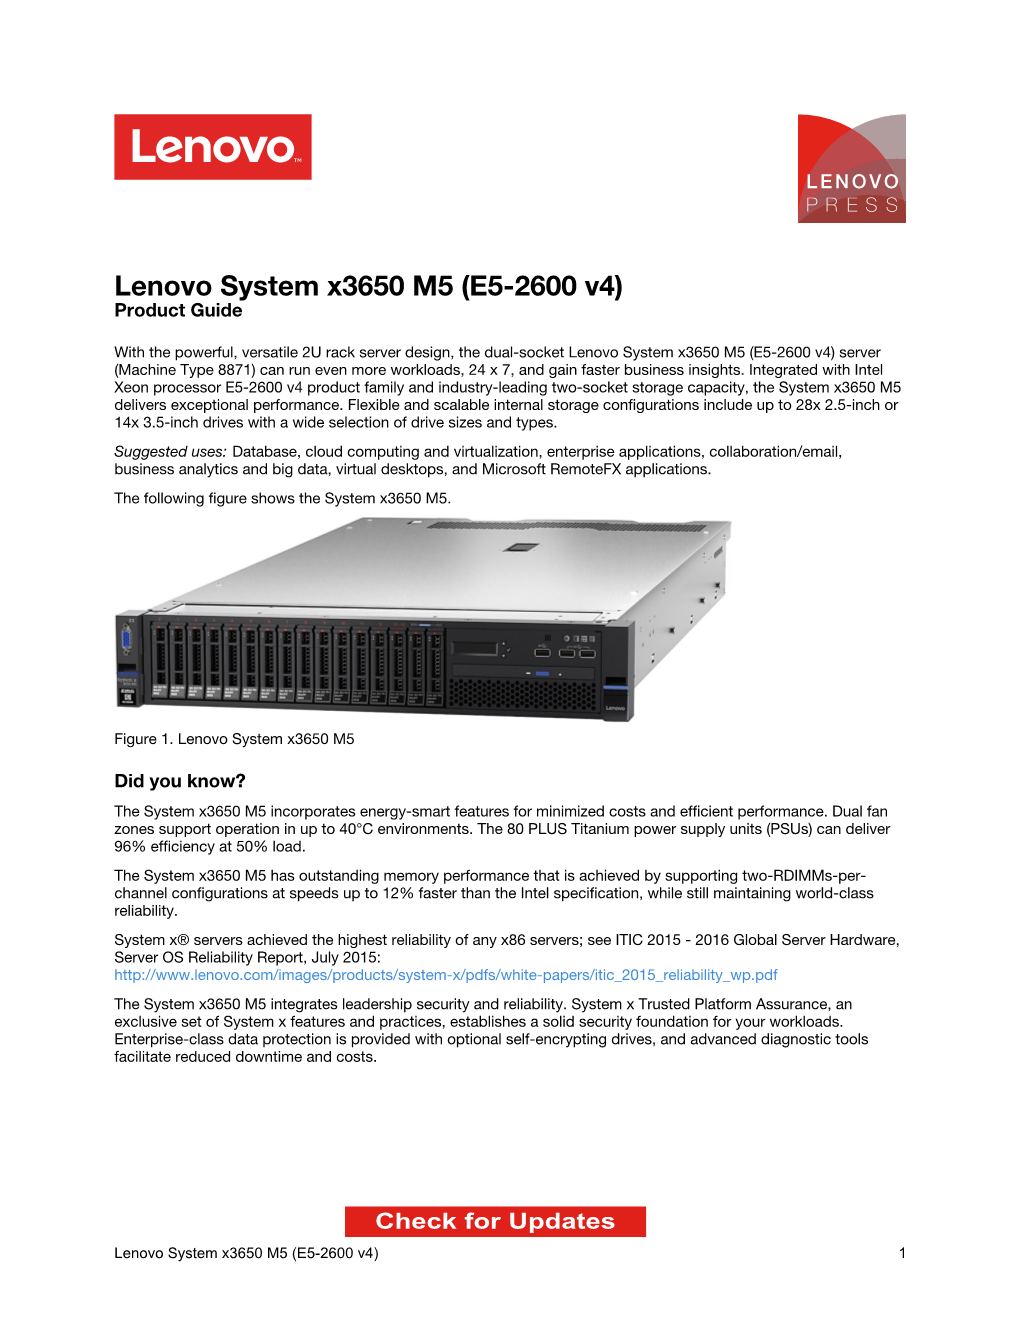 Lenovo System X3650 M5 (E5-2600 V4) Product Guide